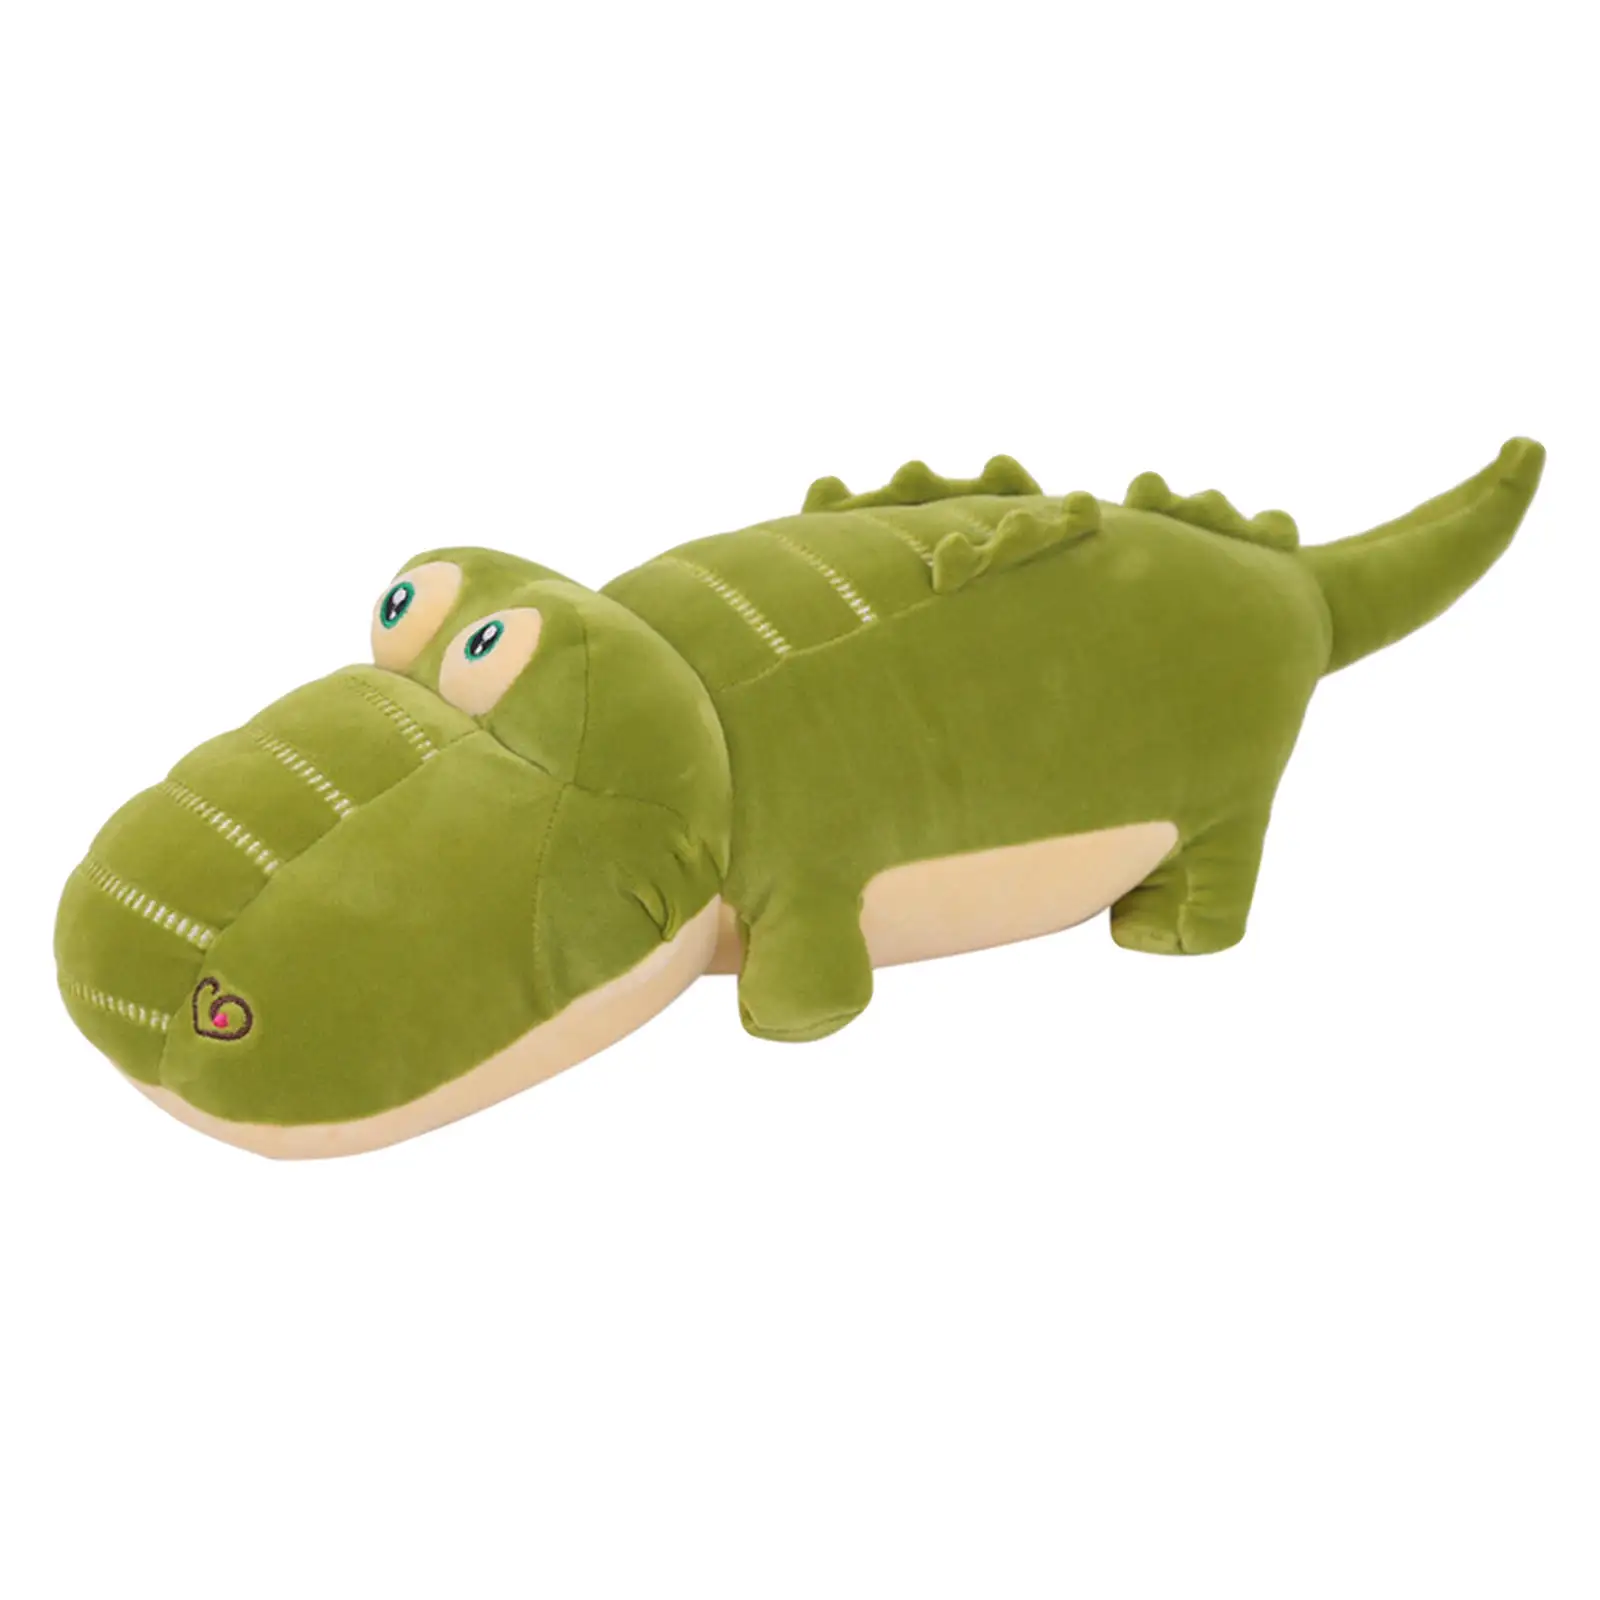 Lovely Plush Alligator Doll 50cm Sleeping Pillow Stuffed Animal Soft Toy for Girls Children Car Sofa Bed